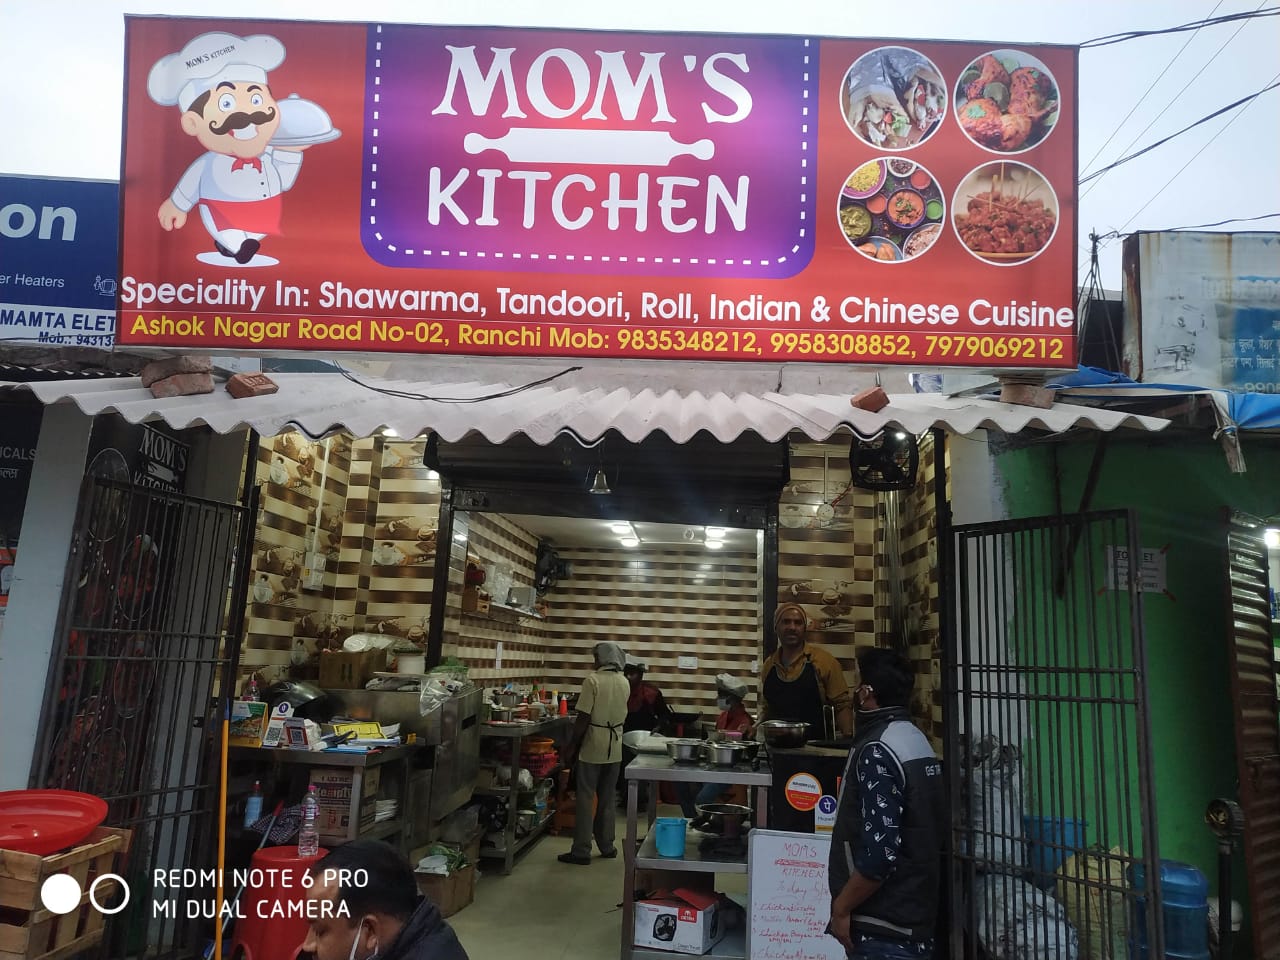 restaurant ( take away ) for hone delivery near ashok v